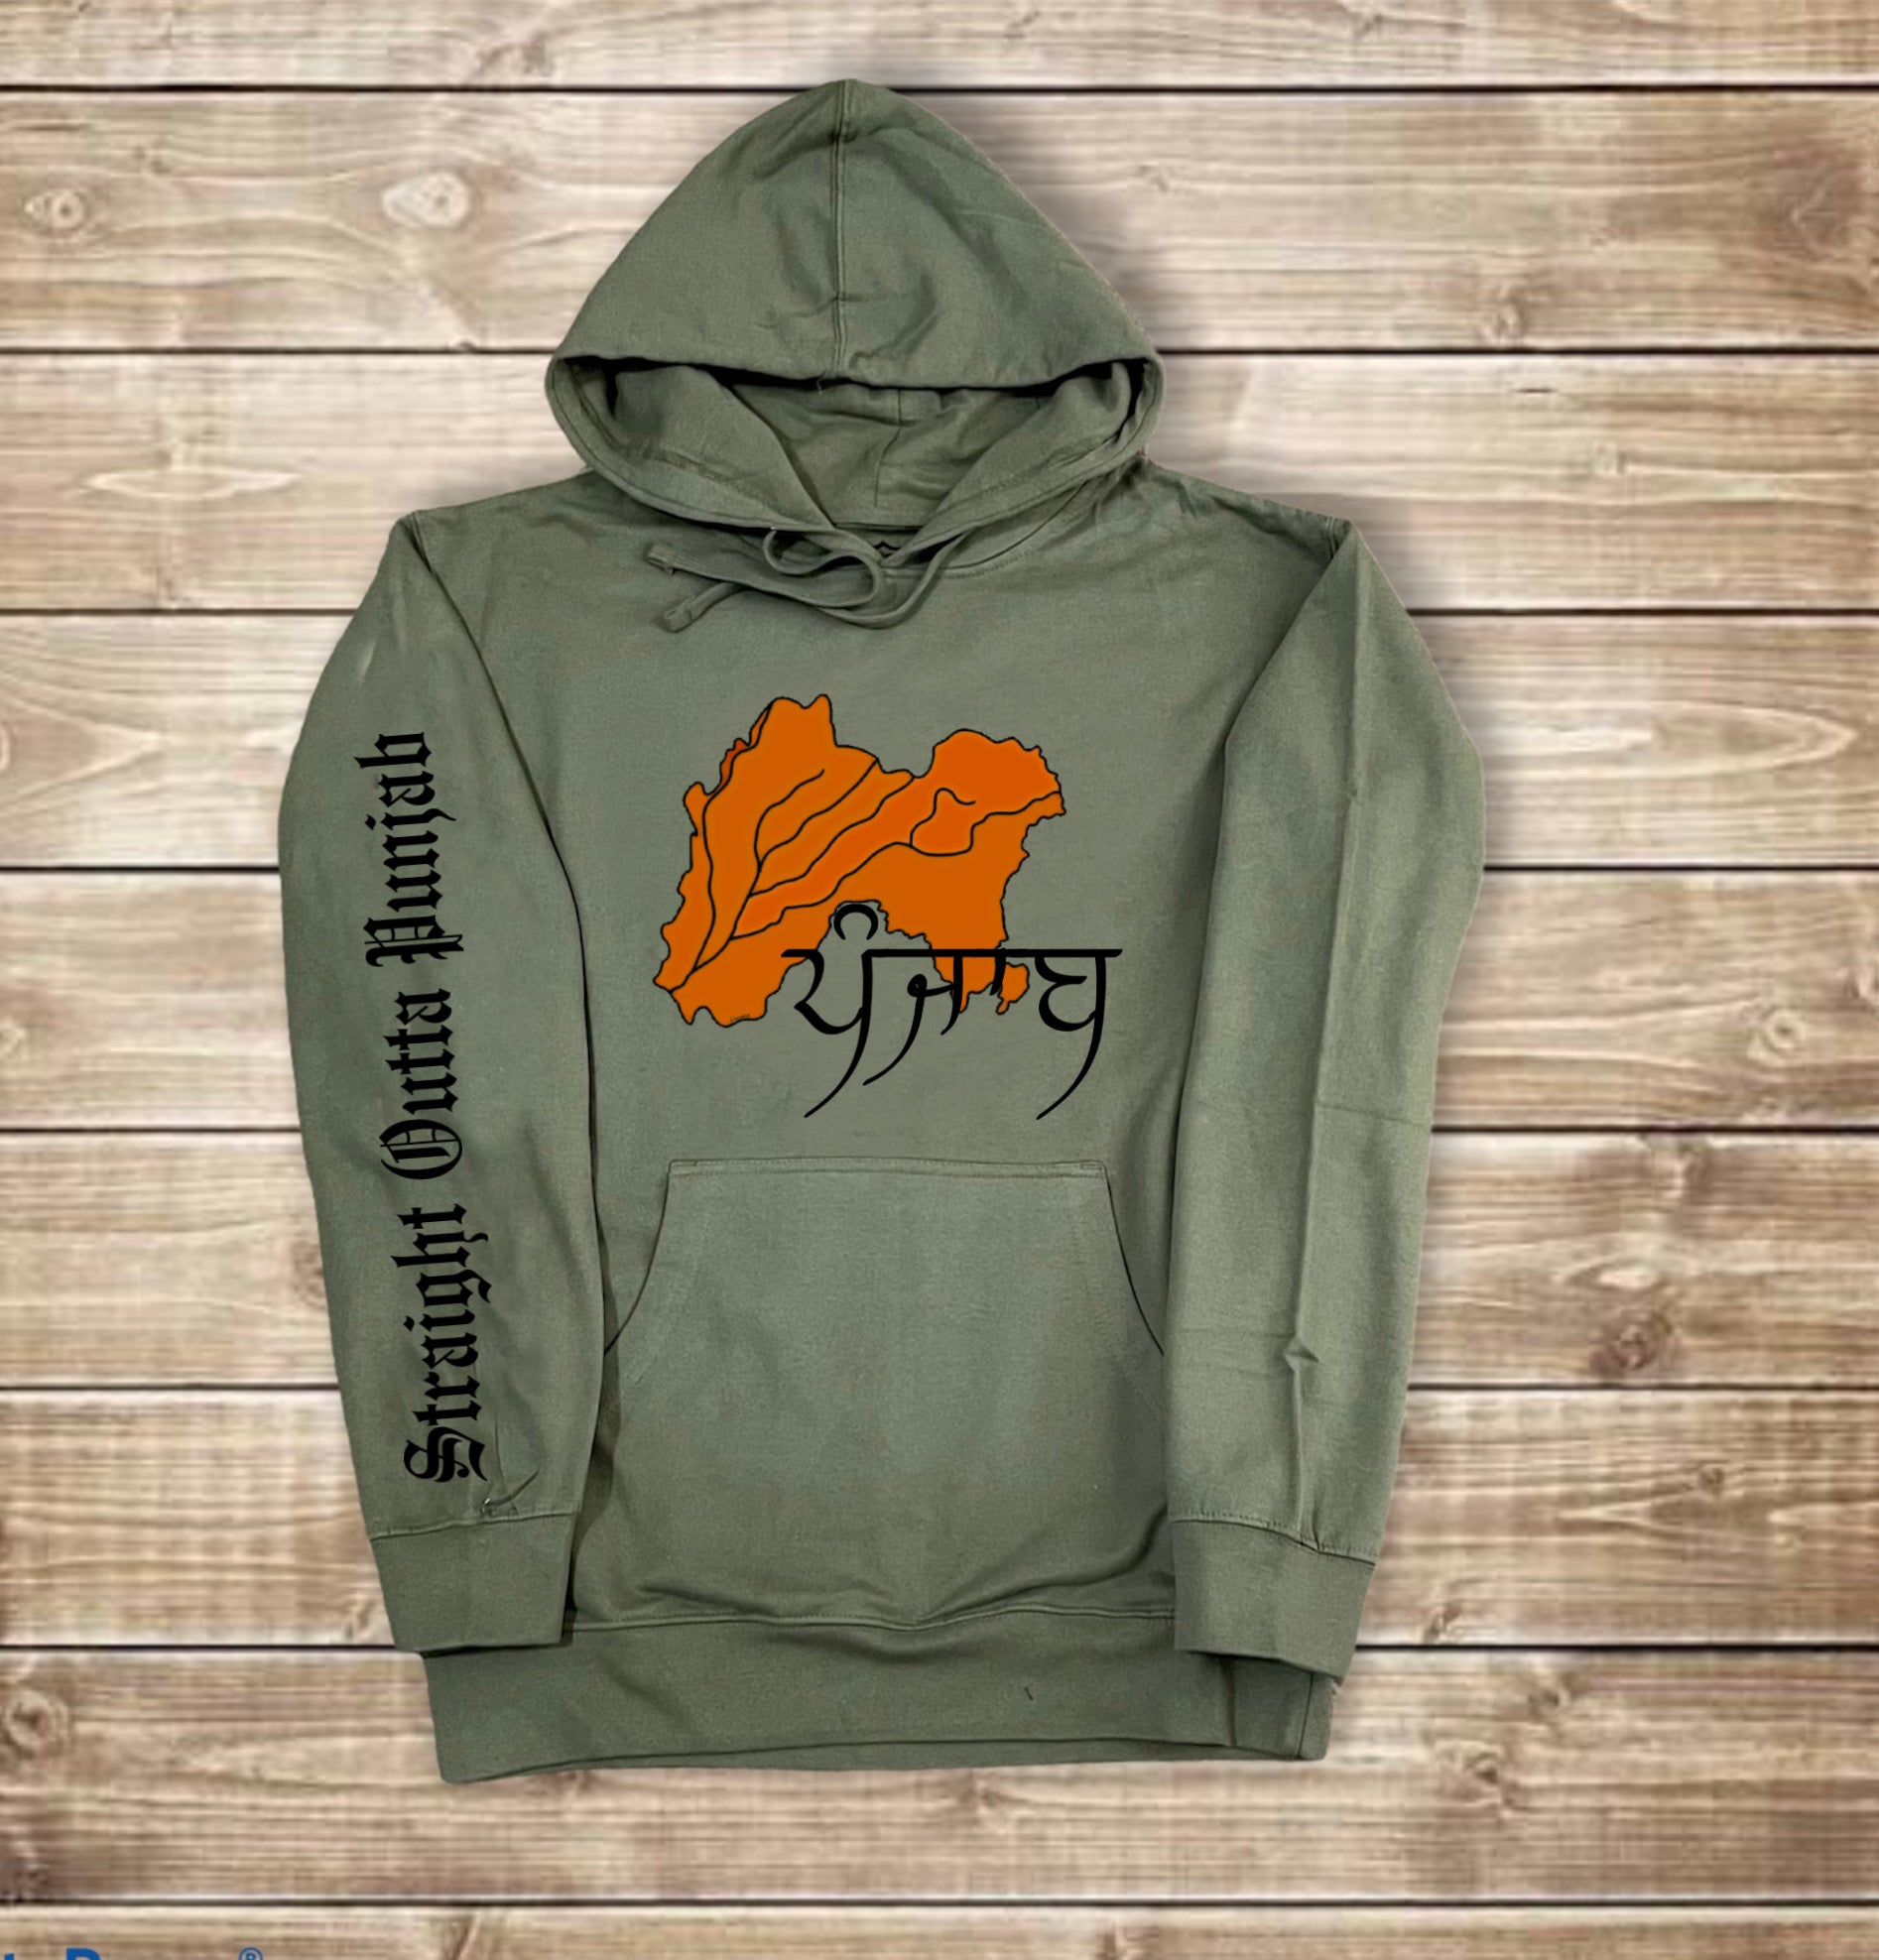 Real Punjab Hoodie/Sweatshirt